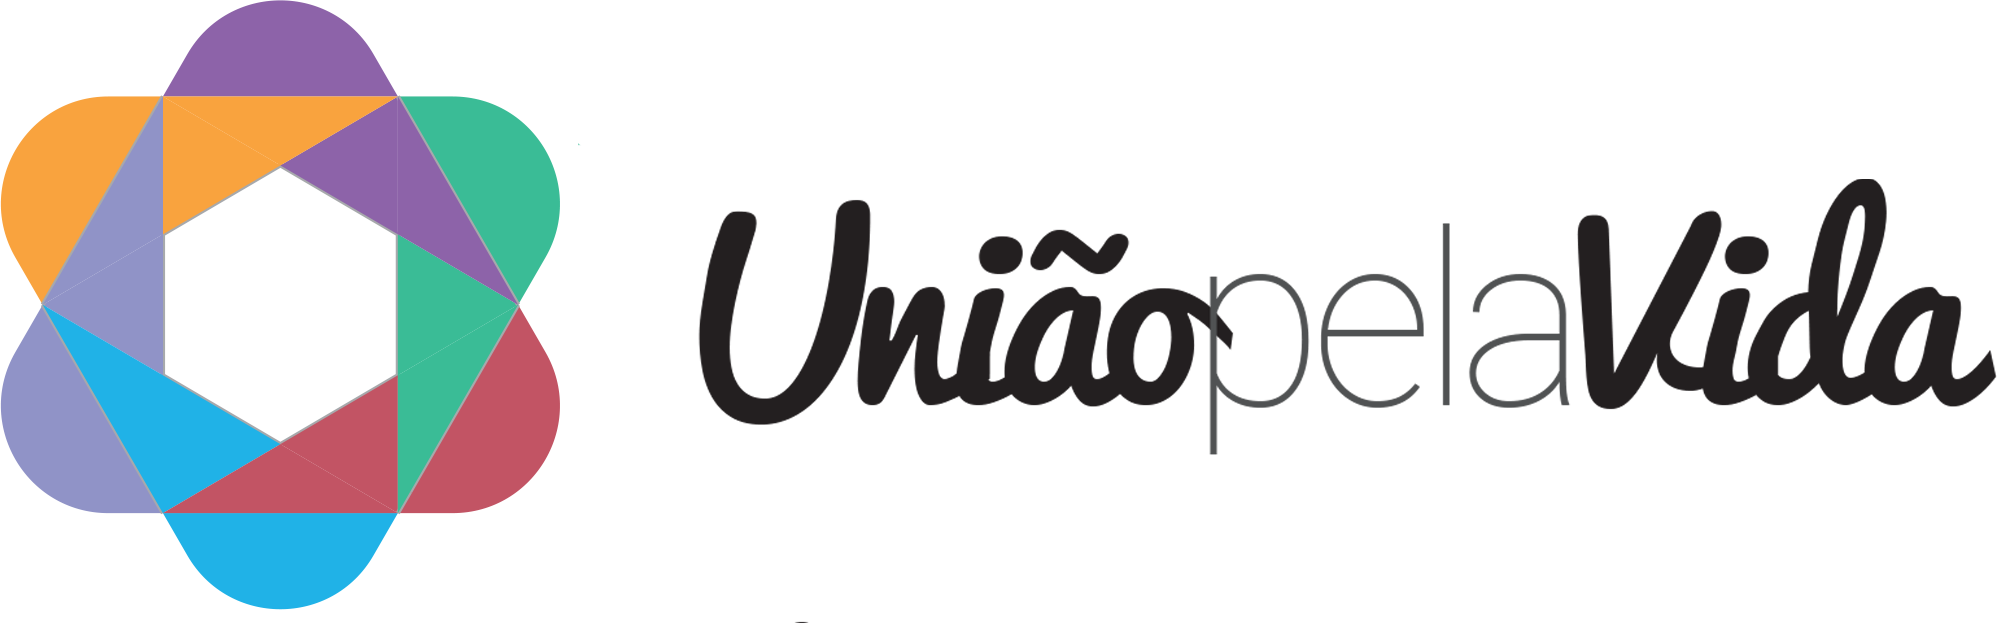 UPV - União pela vida